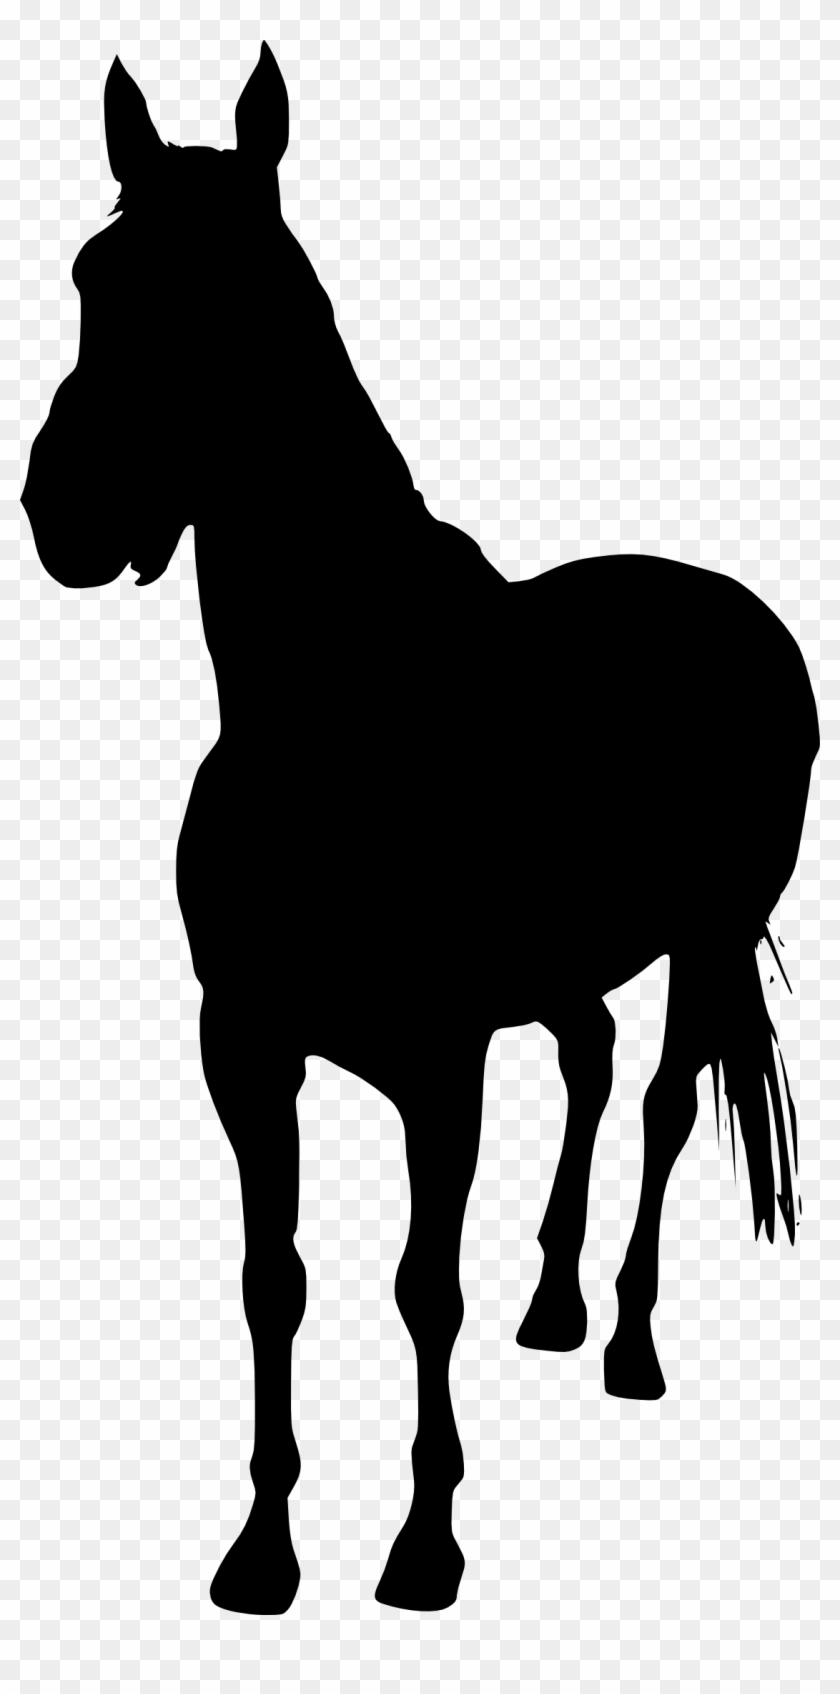 5 Horse Silhouette - Silhouette Unicorn #237495